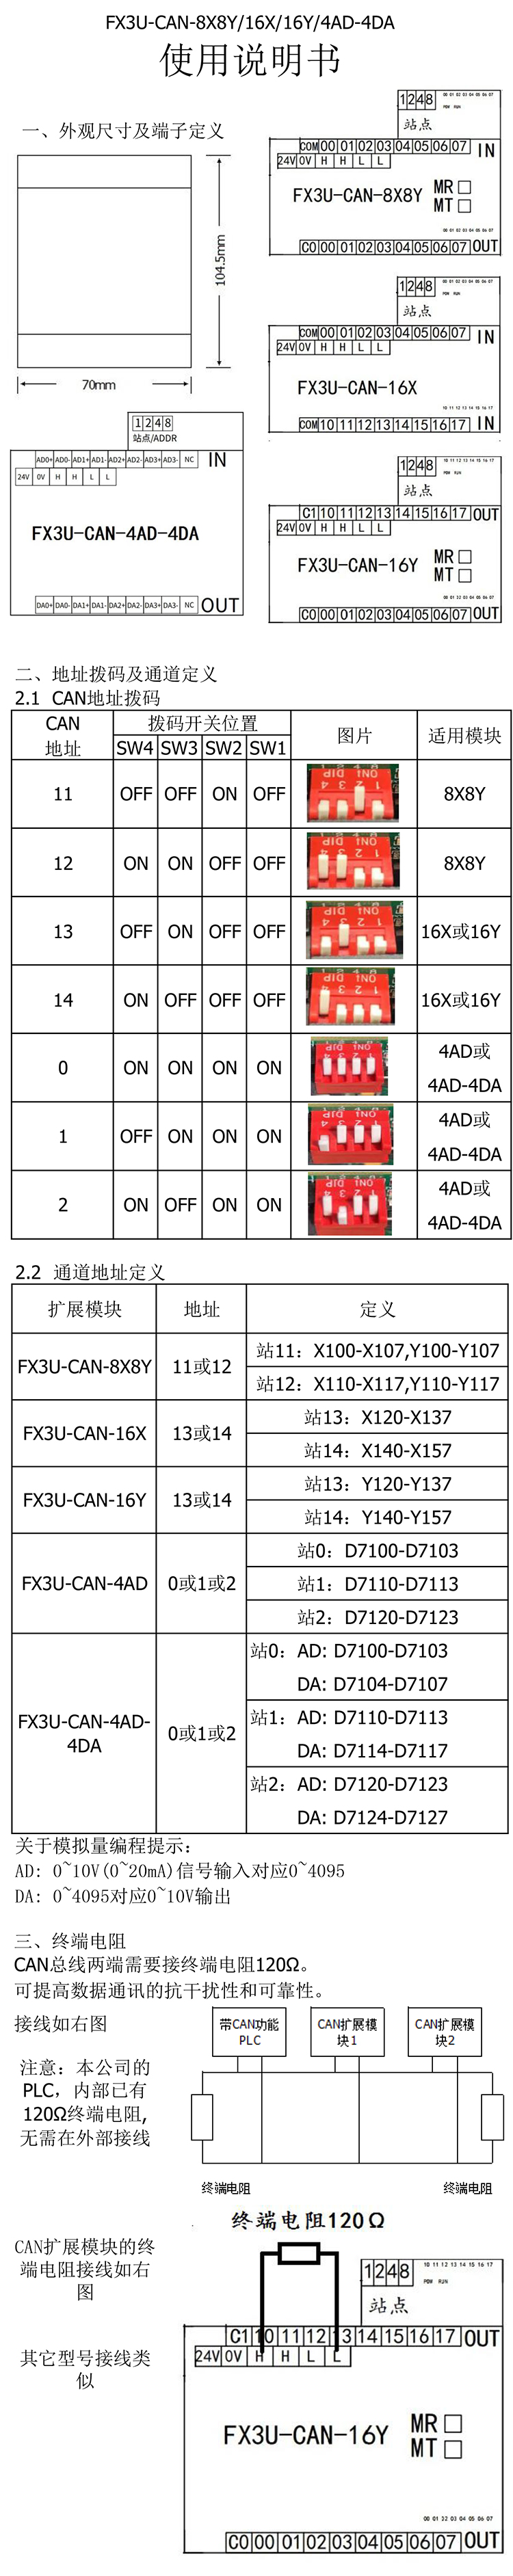 FX3U-CAN-4AD/4DA